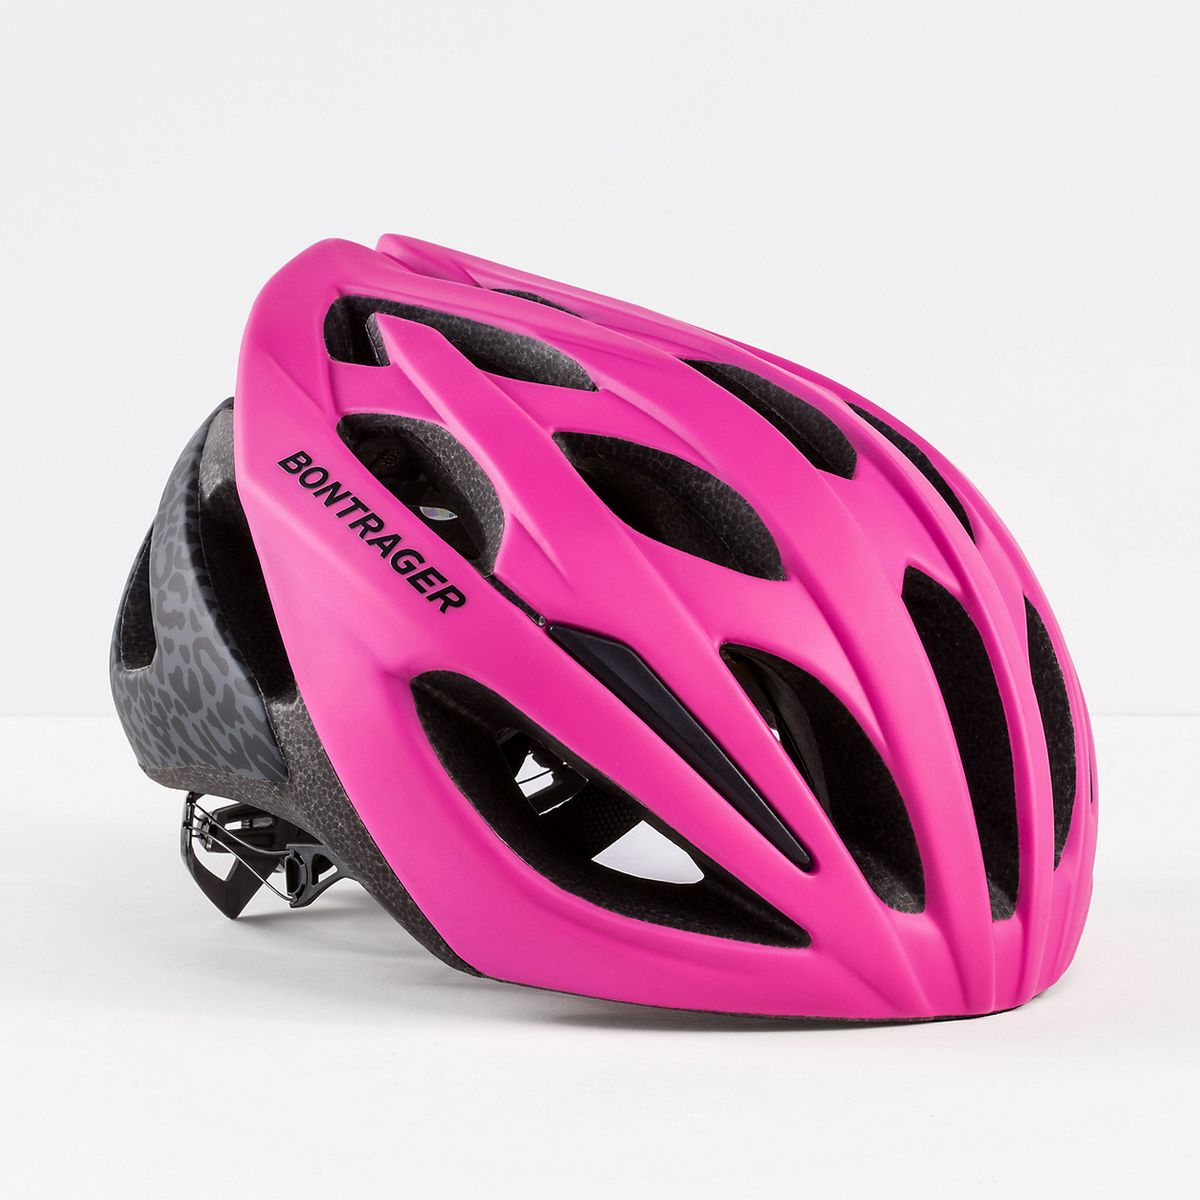 adult road bike helmet